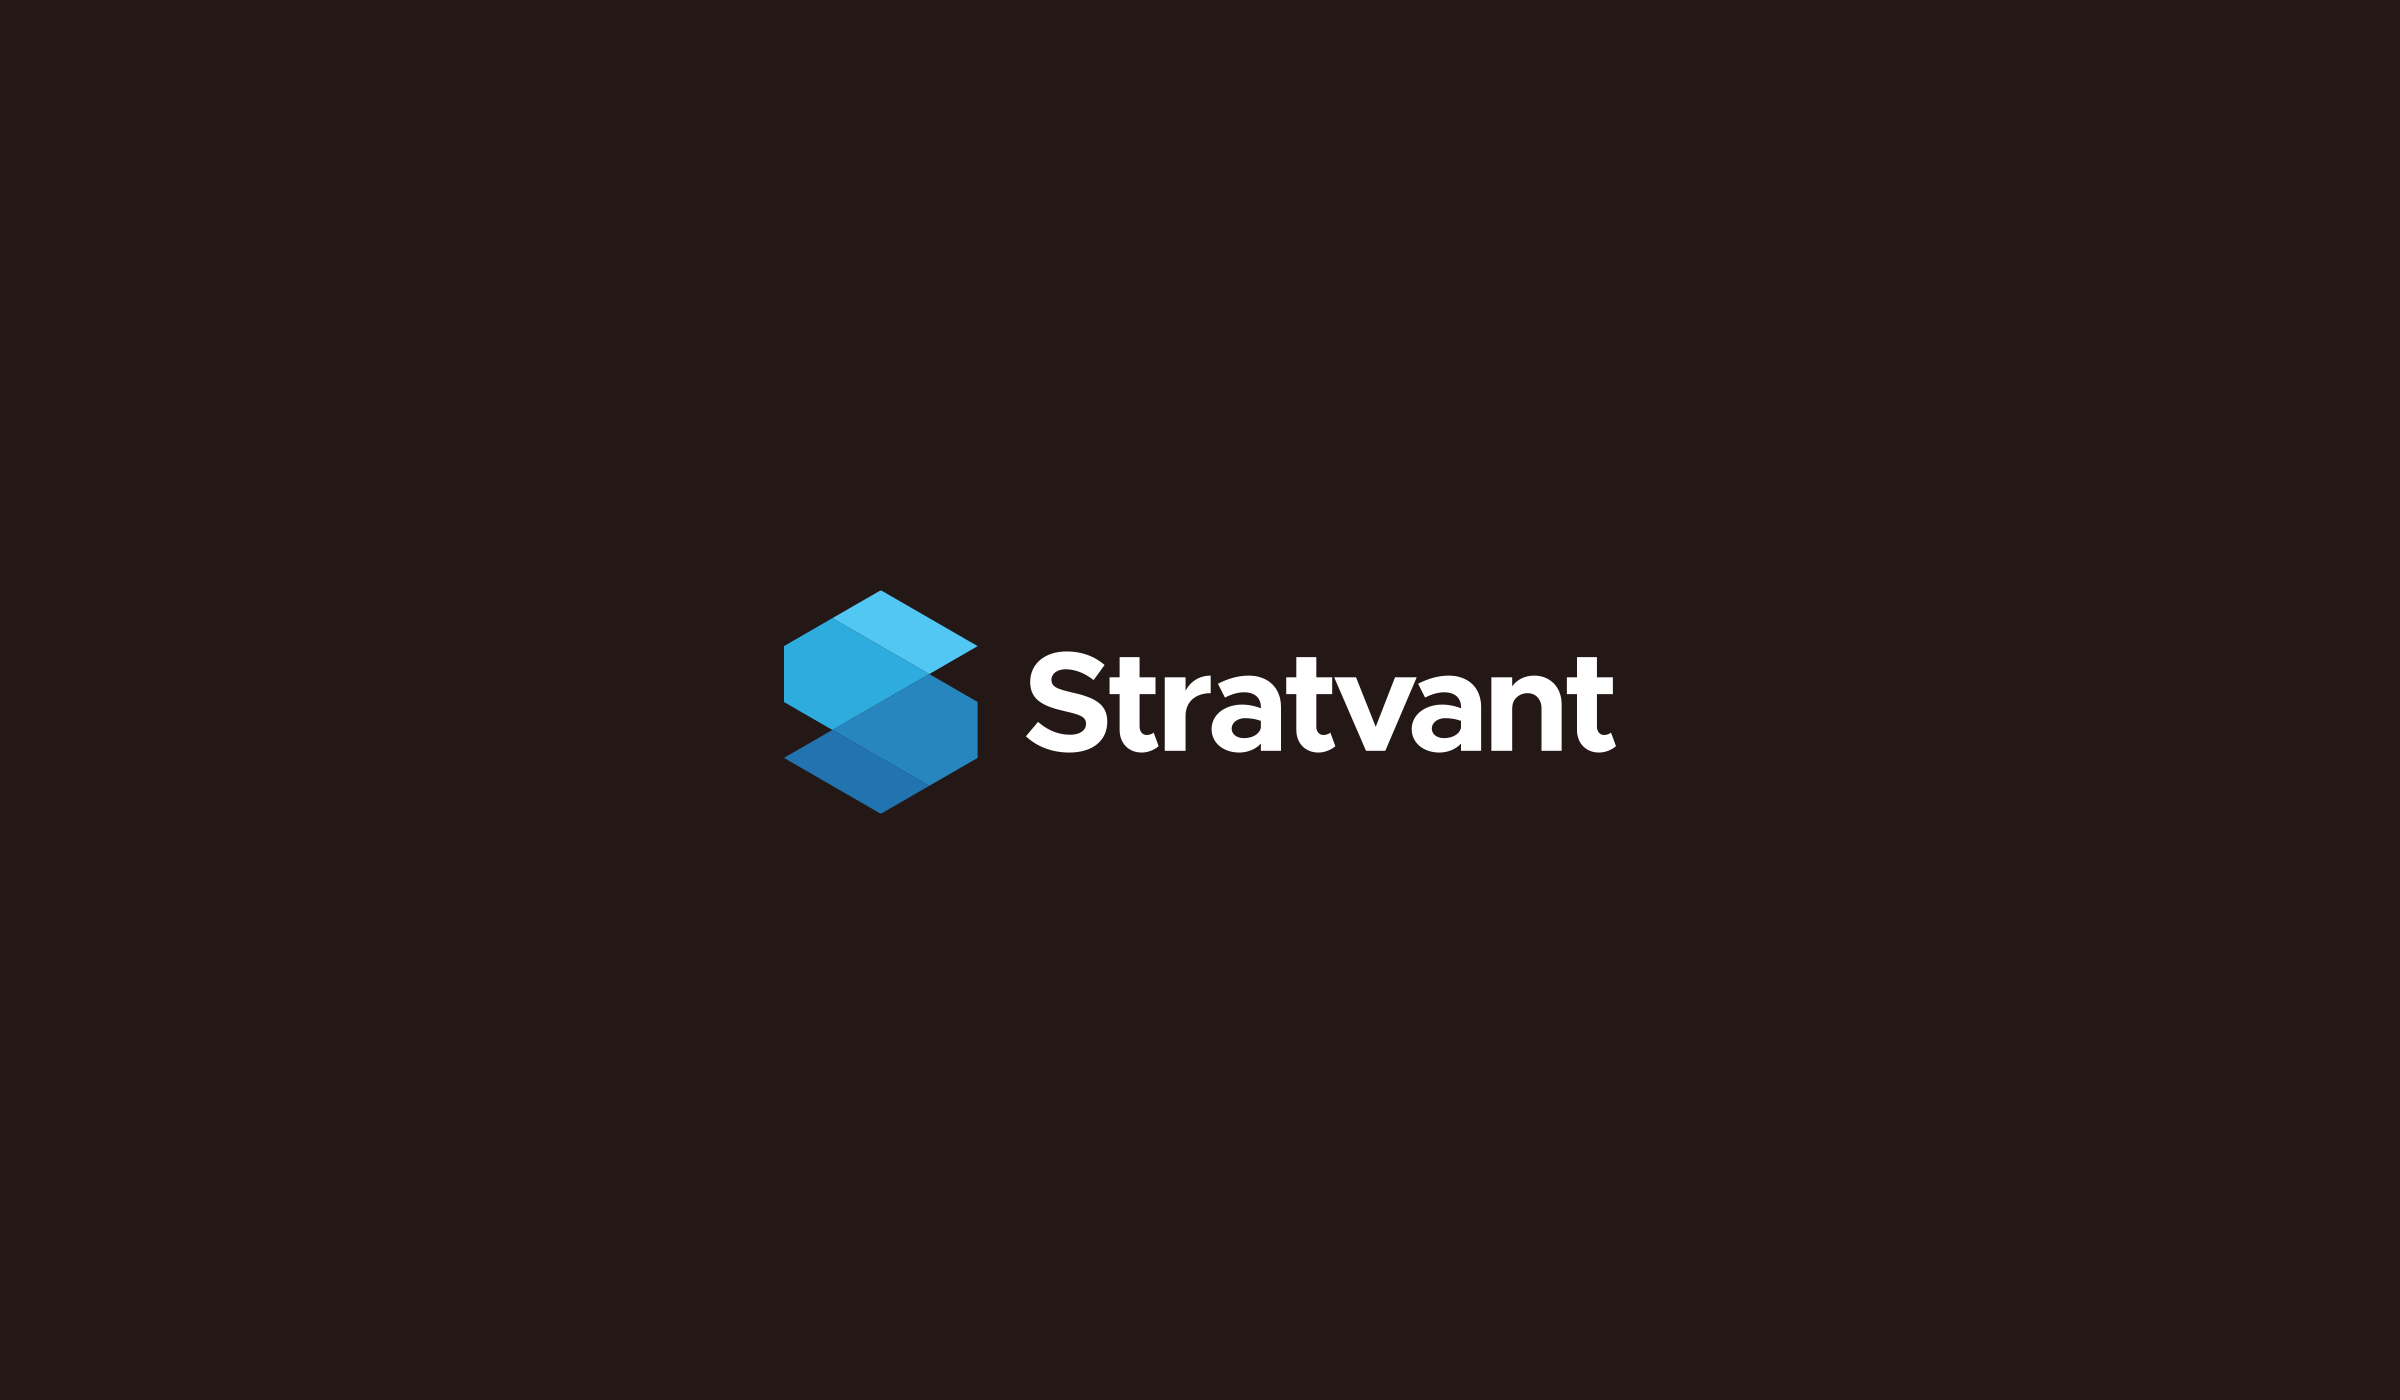 stratvant.com